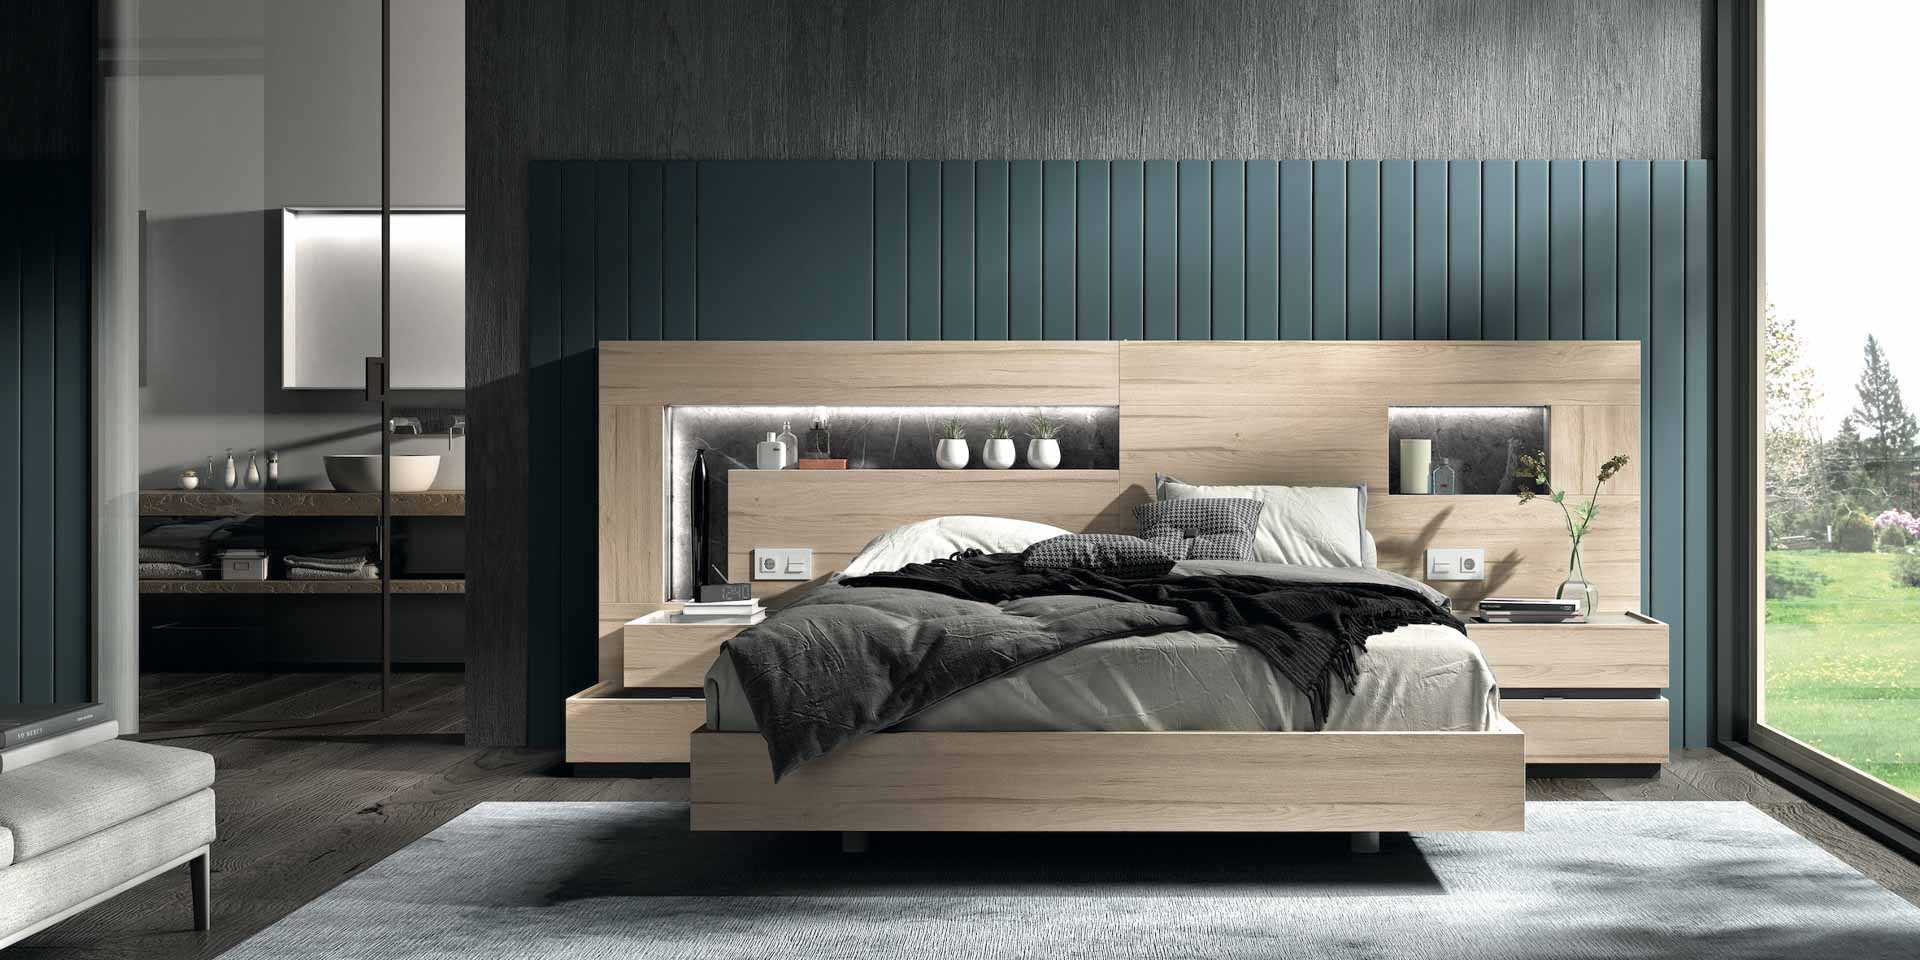 Diseño de mobiliario de dormitorio 46